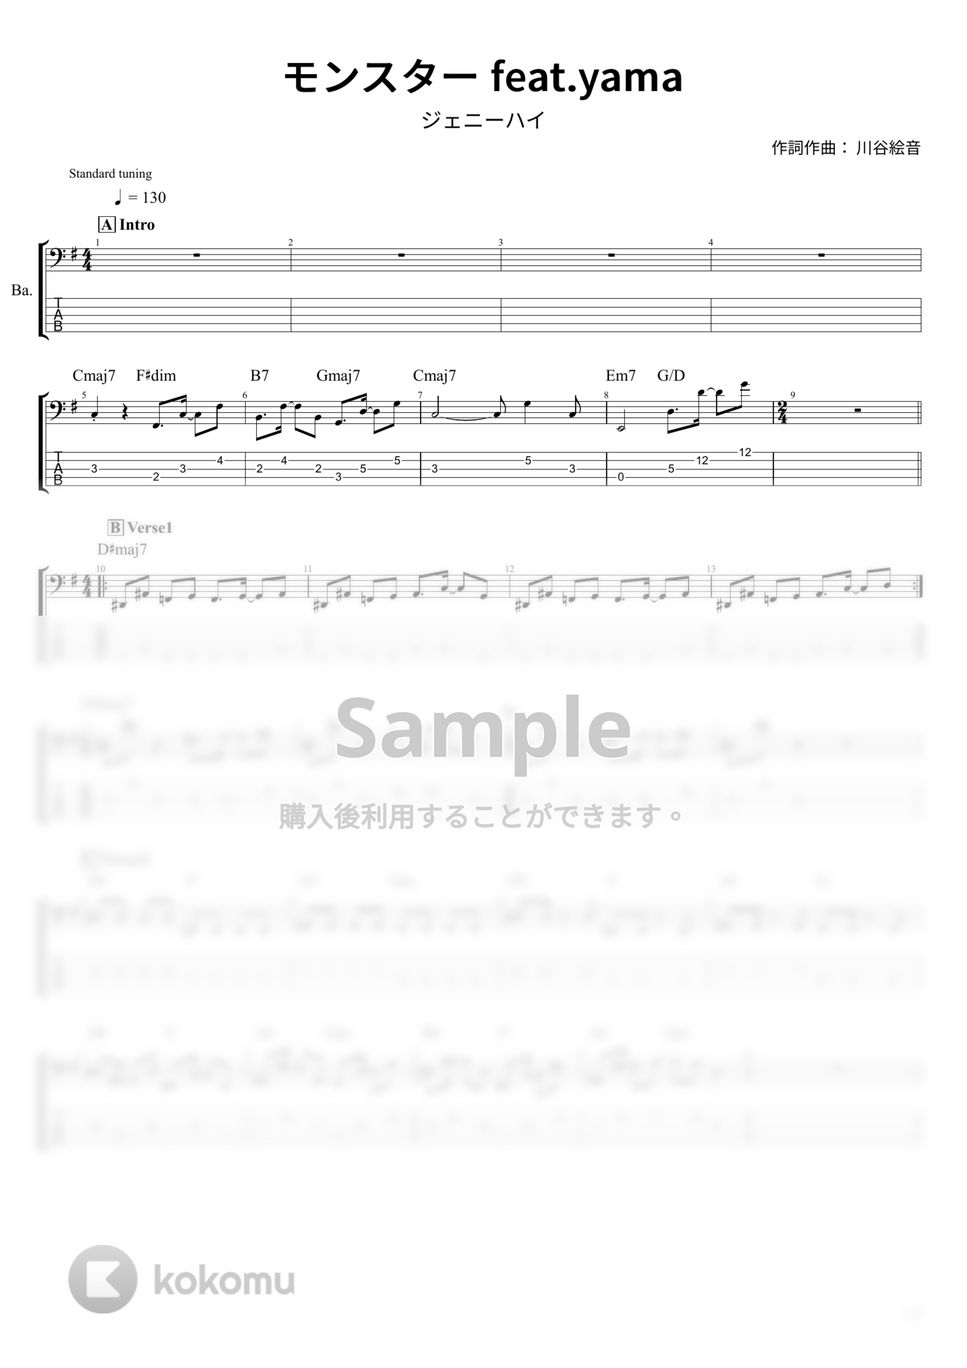 ジェニーハイ - モンスター feat.yama (ベース Tab譜 5弦) by T's bass score